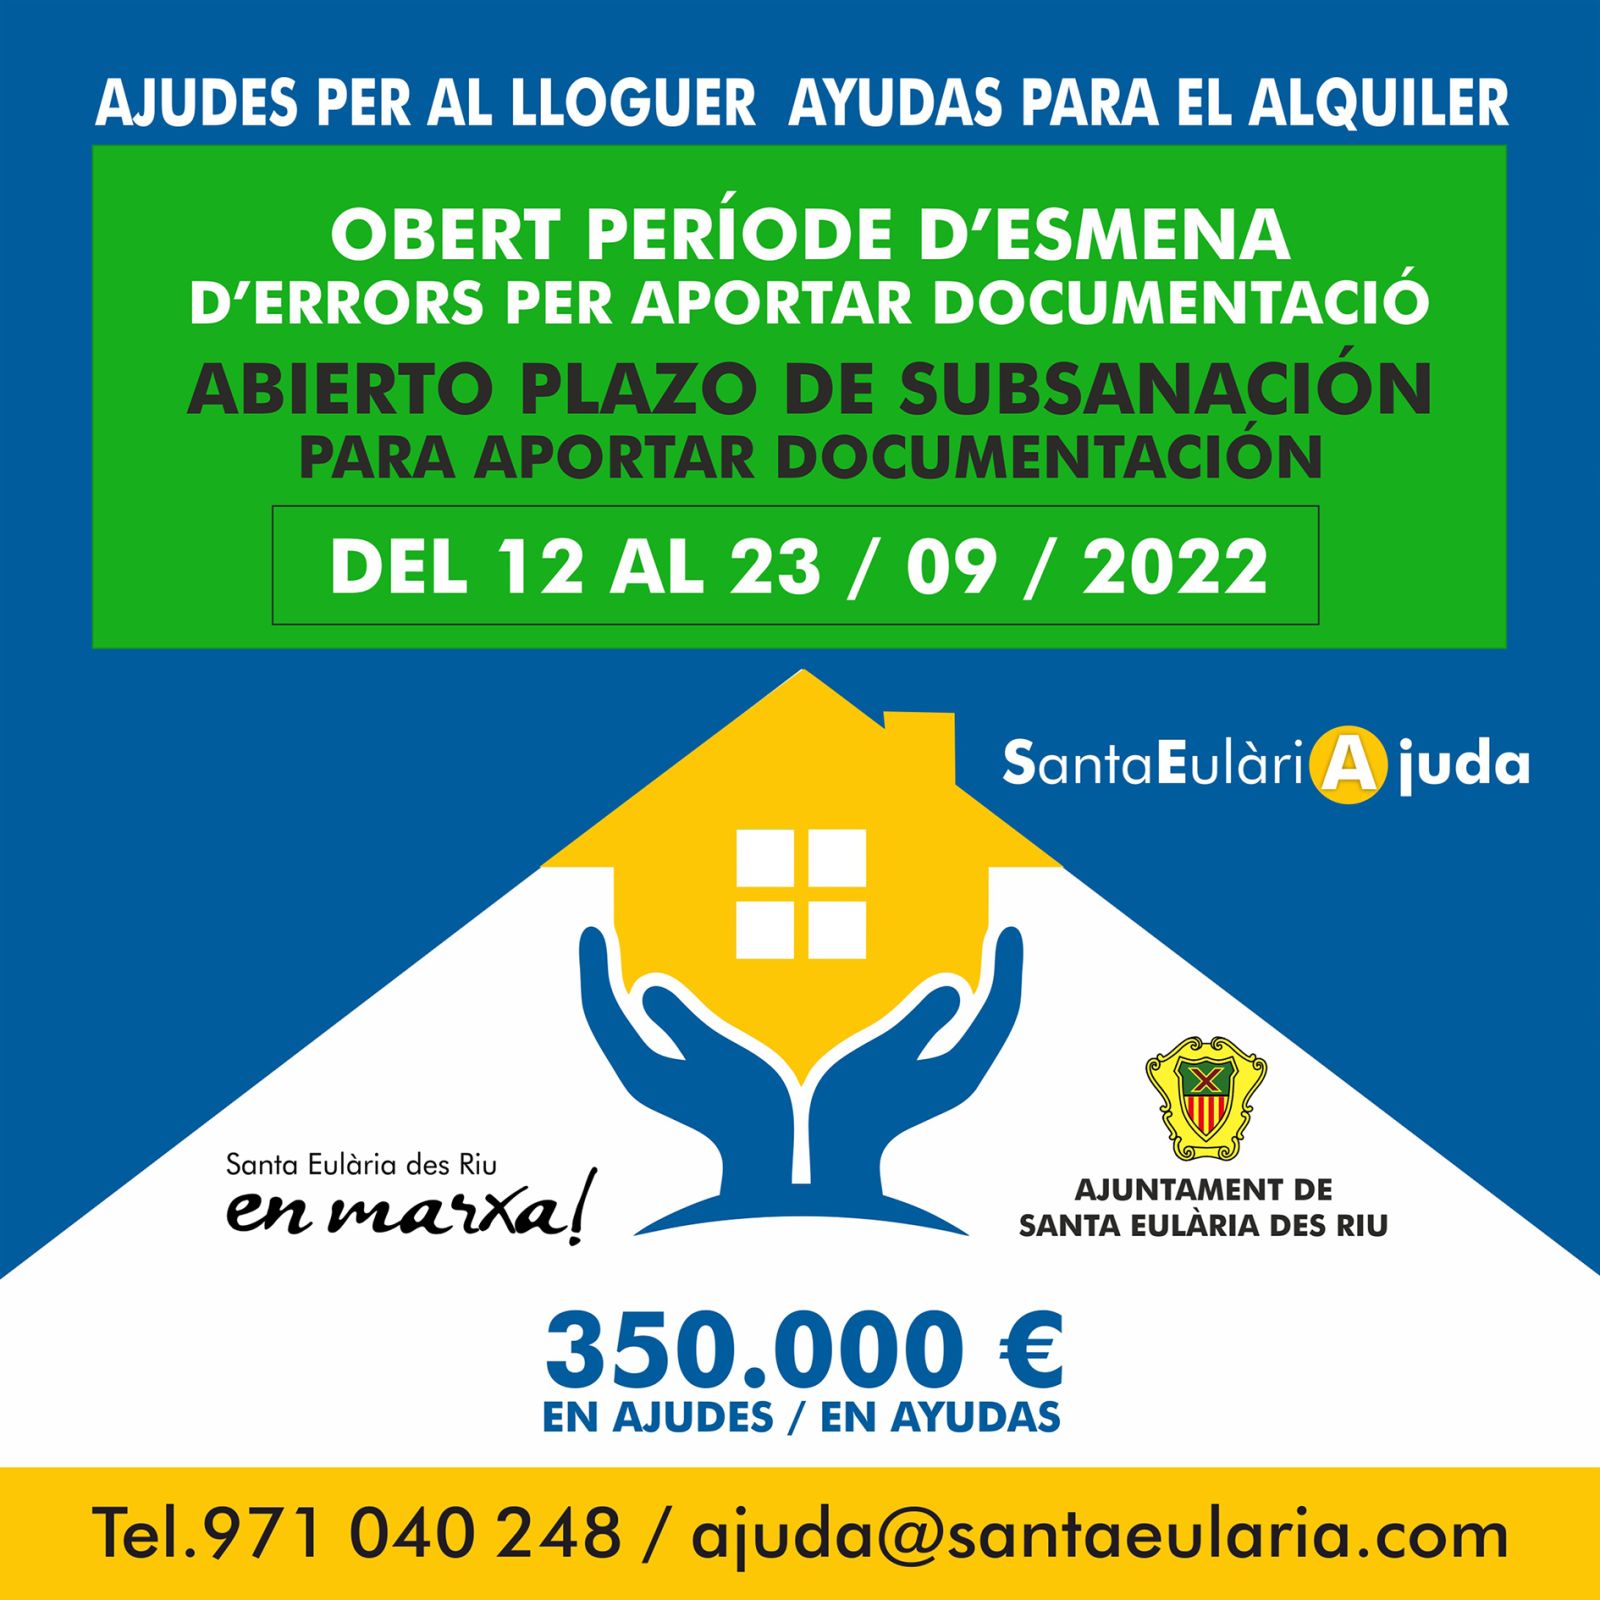 Santa Eulària des Riu tramita 263 solicitudes de las ayudas al alquiler, que repartirán 350.000 euros entre residentes en el municipio